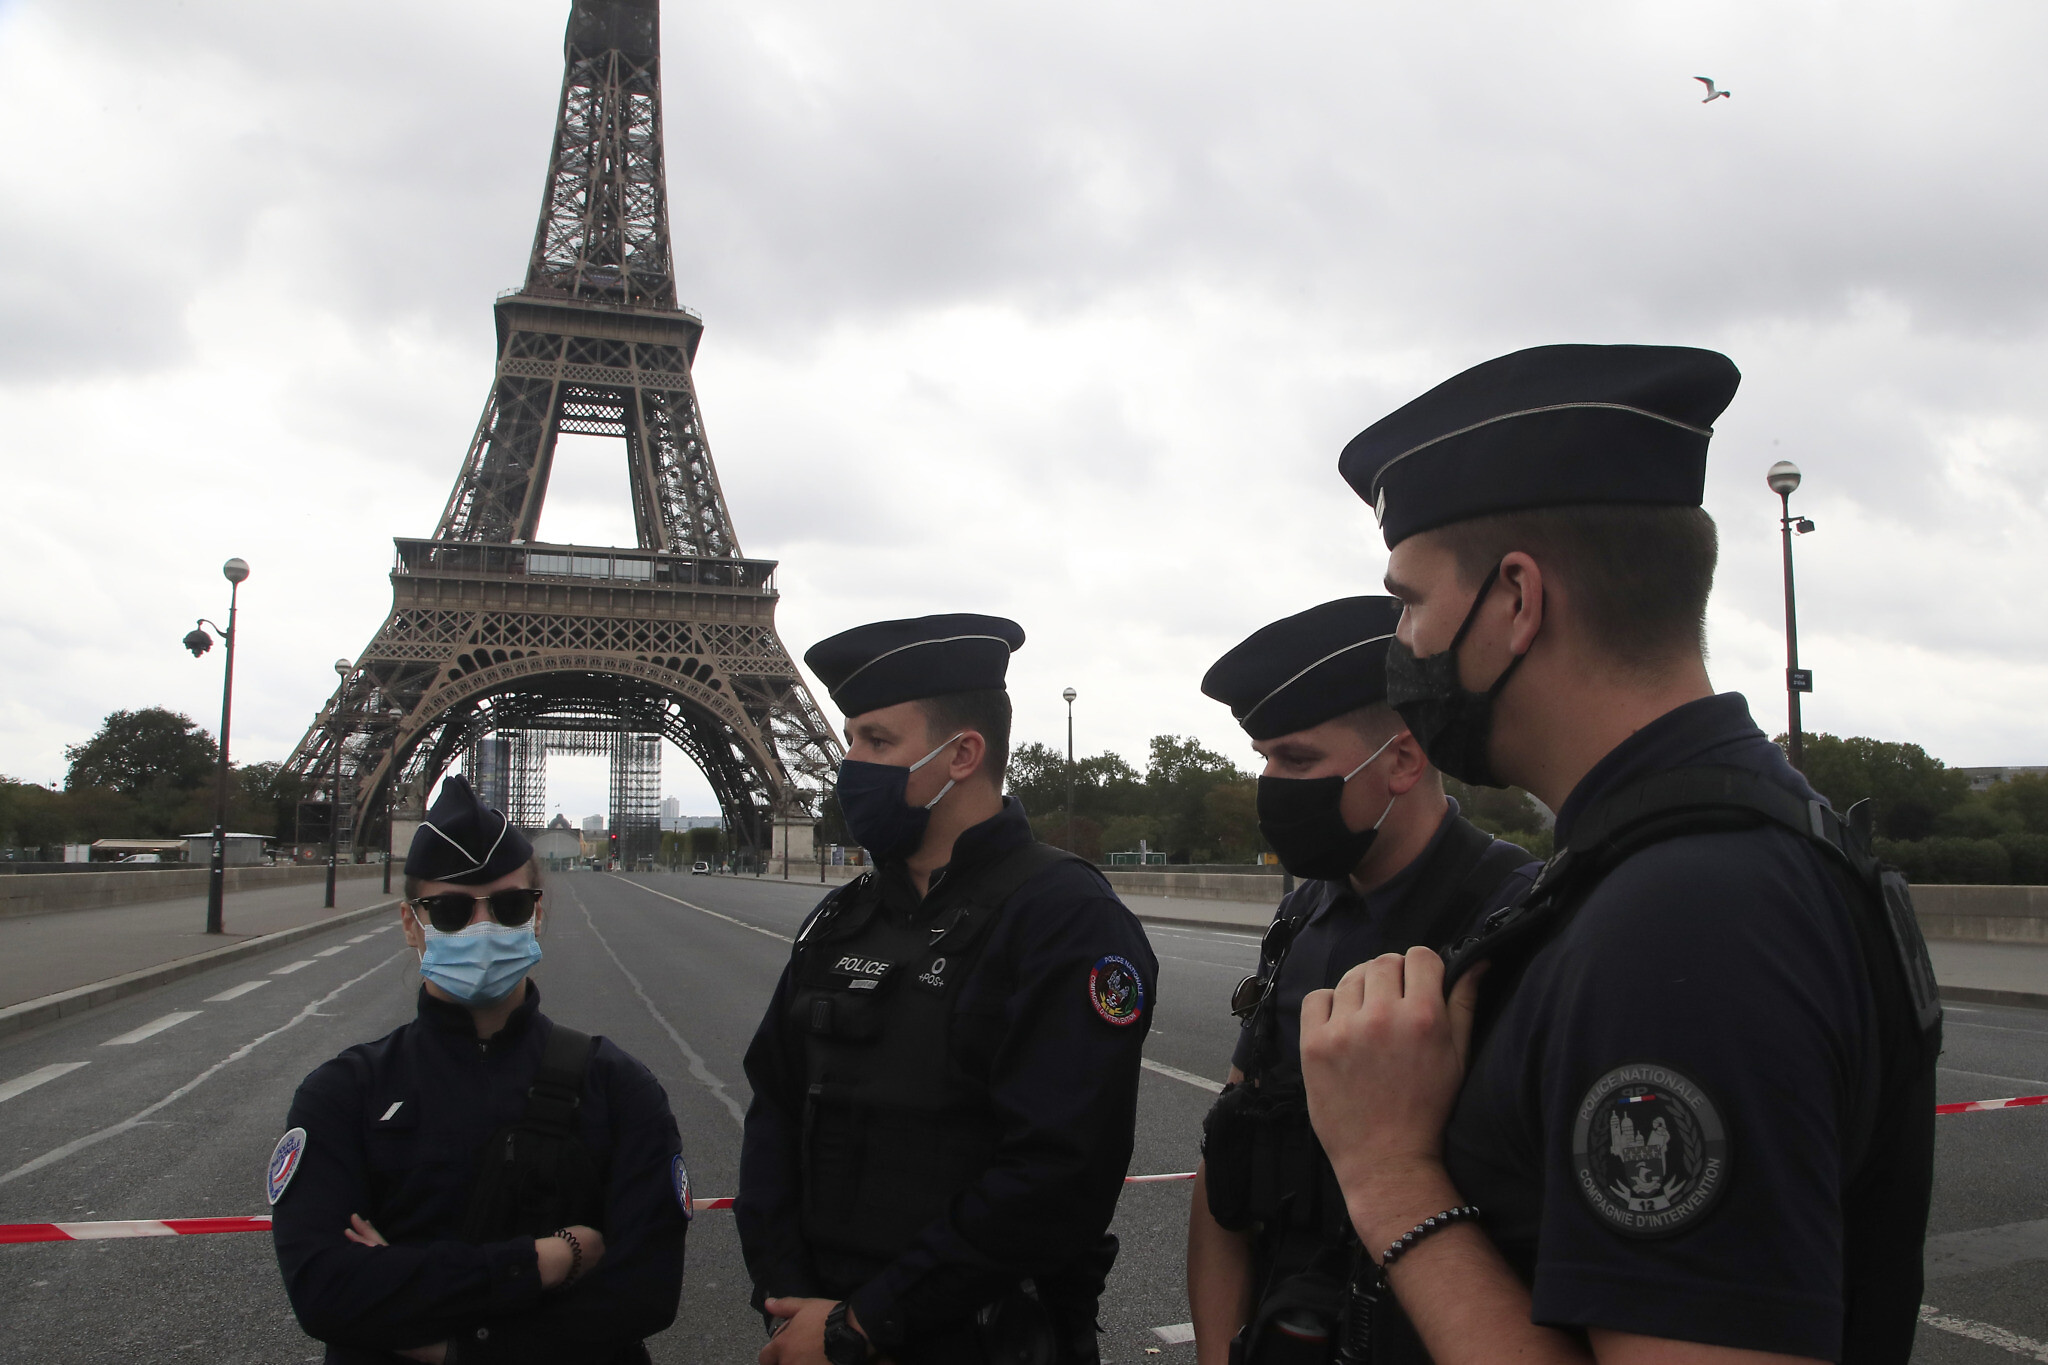 محاربة التطرف في فرنسا ـ  تشديد الإجراءات والتدابير